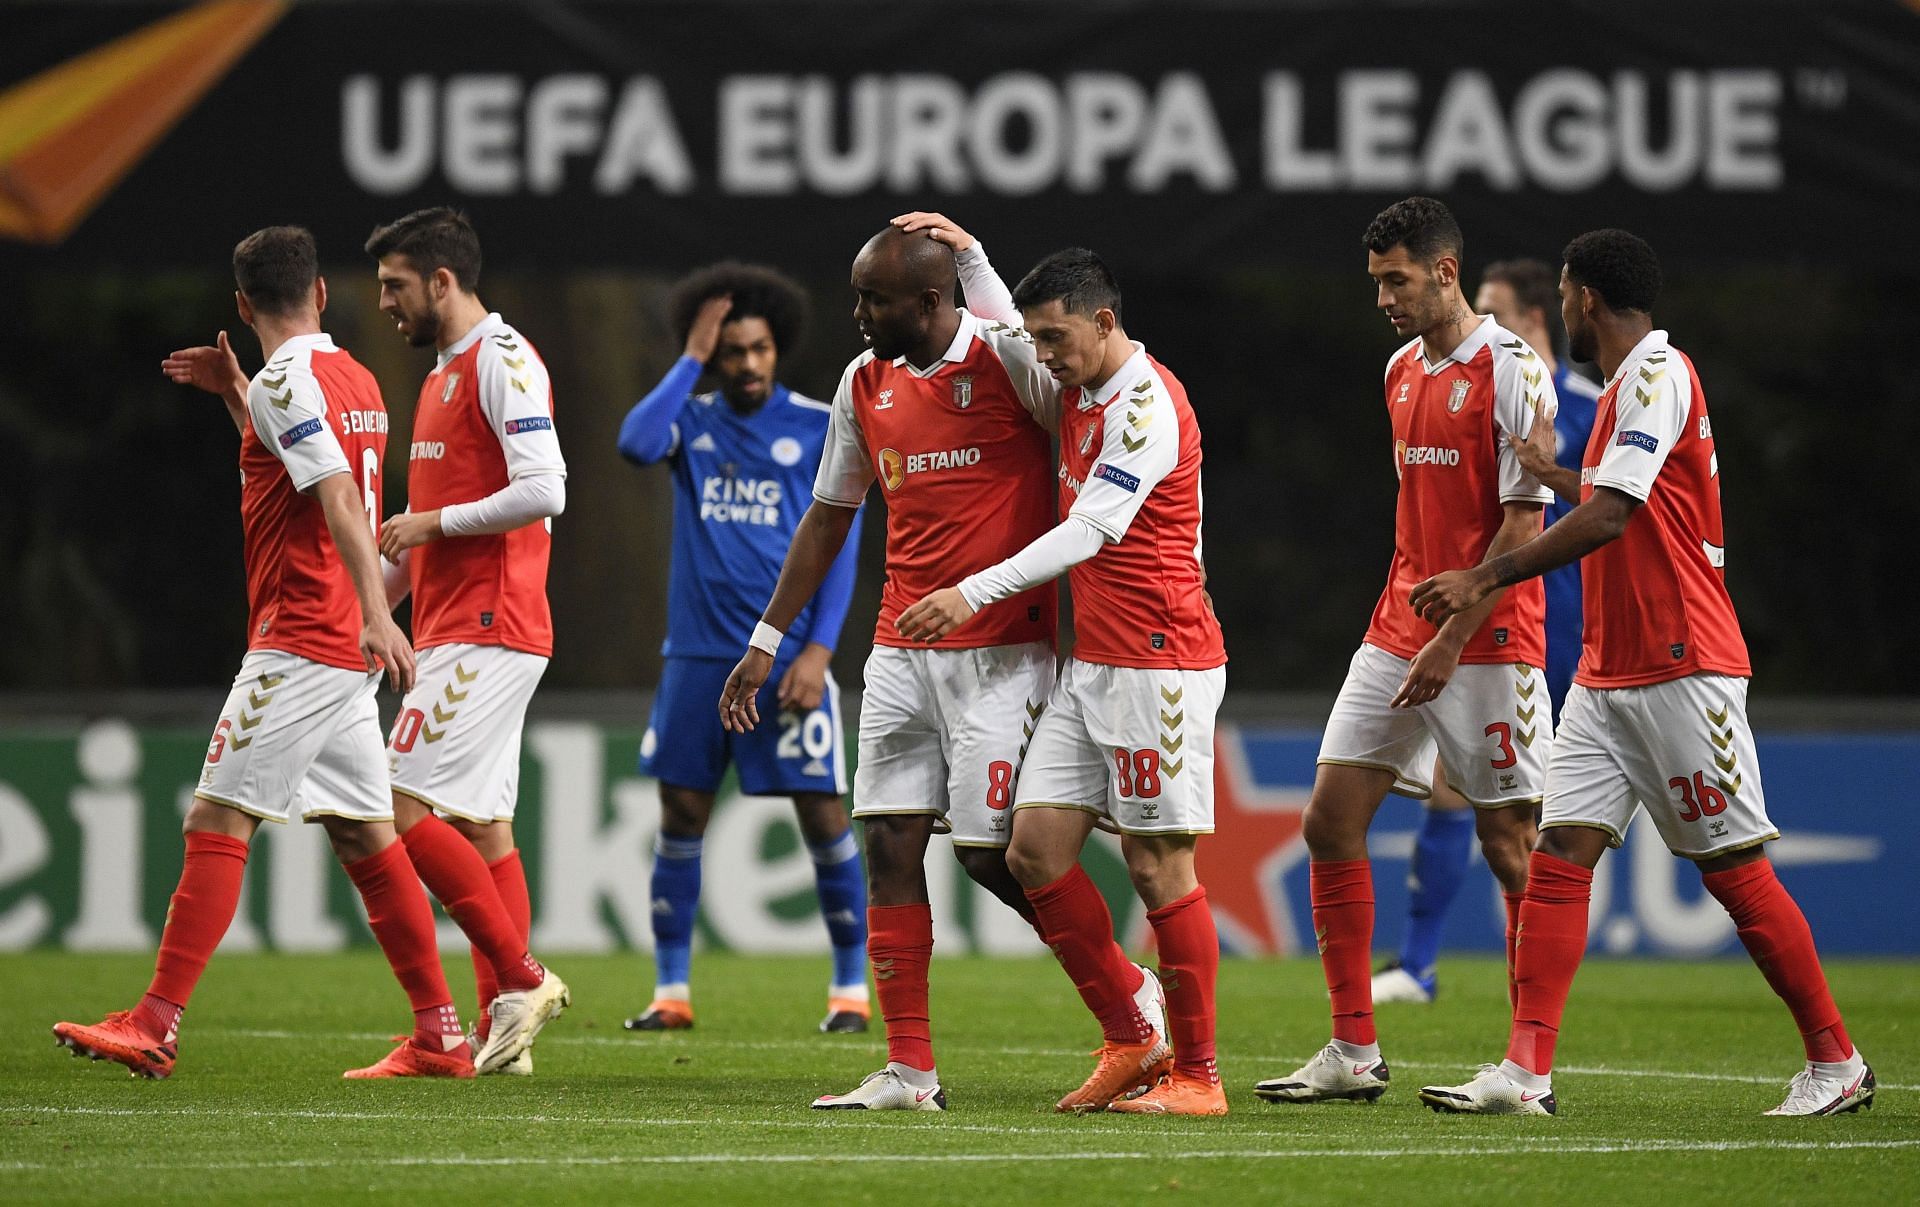 SC Braga v Leicester City: Group G - UEFA Europa League